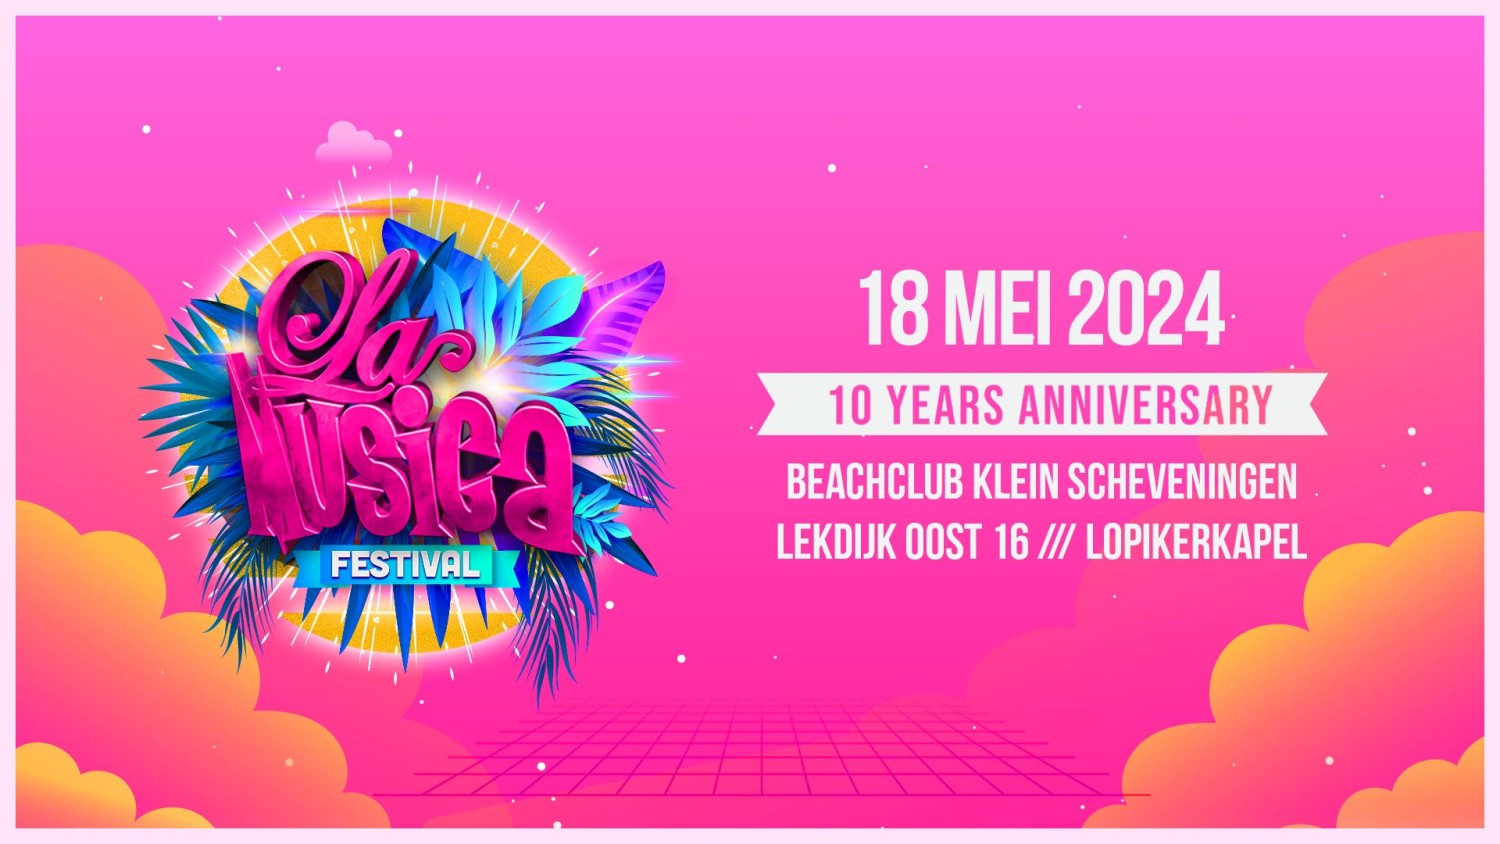 La Musica Festival 2024